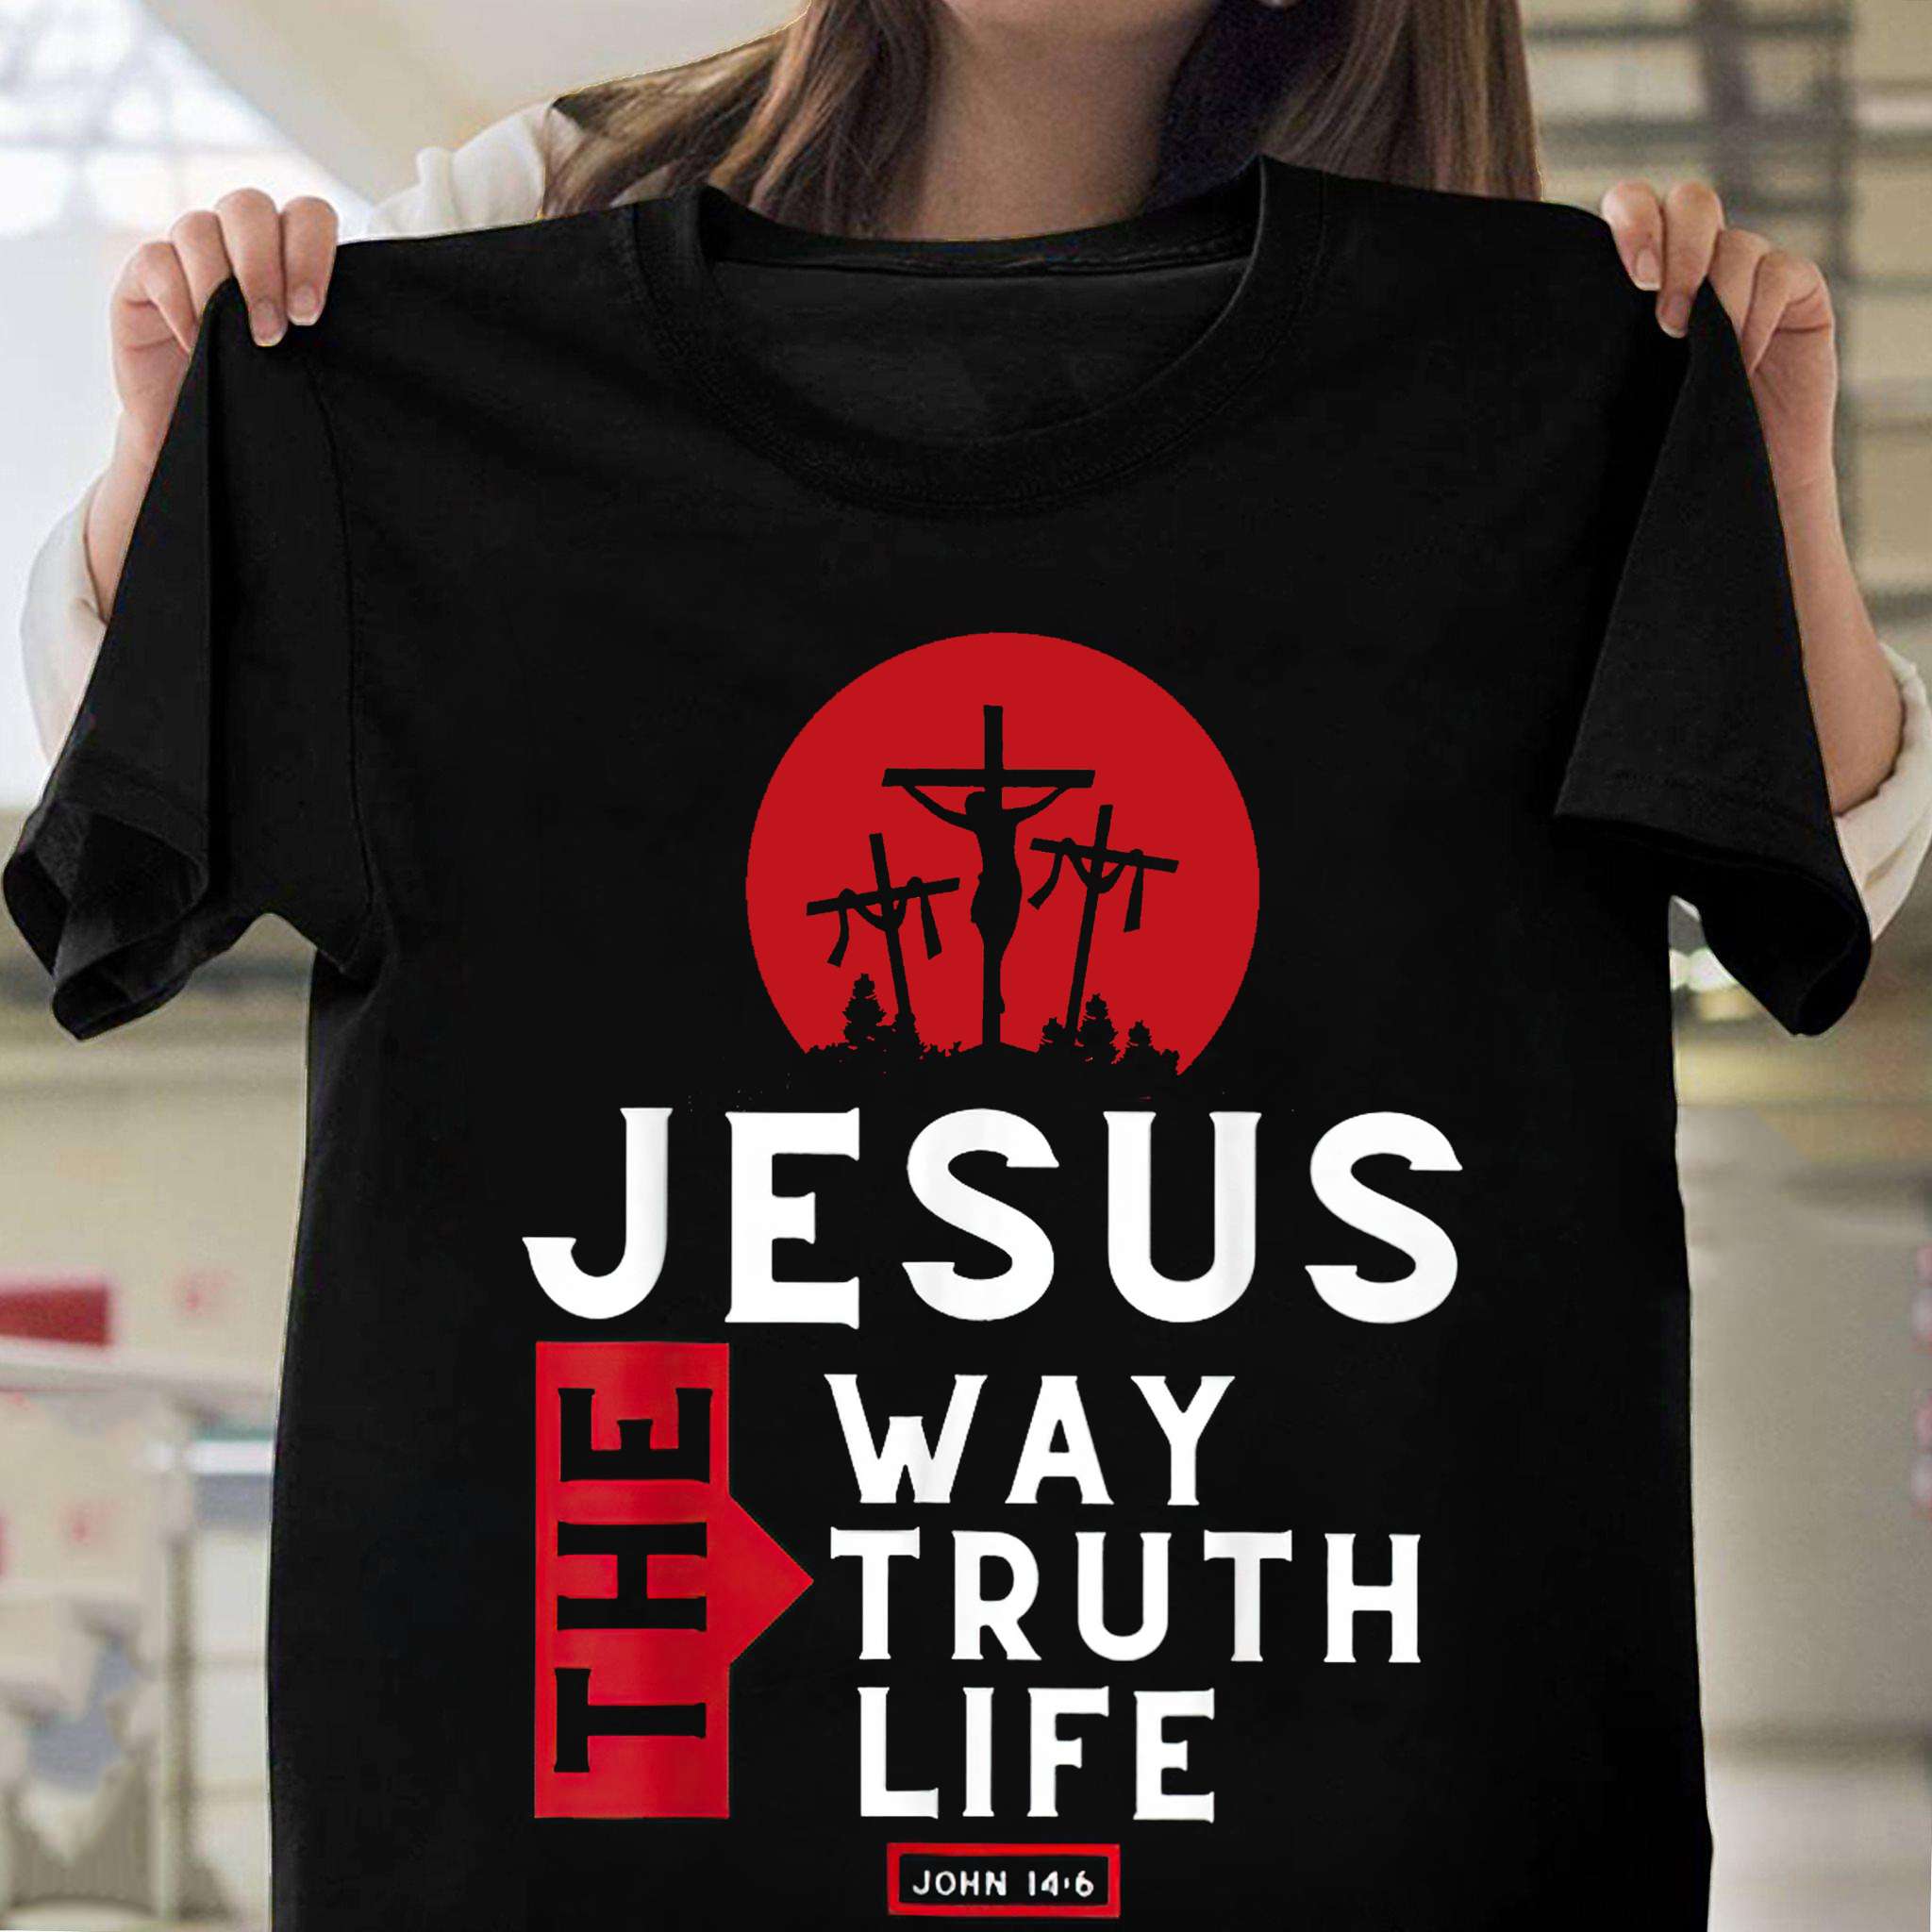 God's Cross - Jesus the way truth life john 14-6